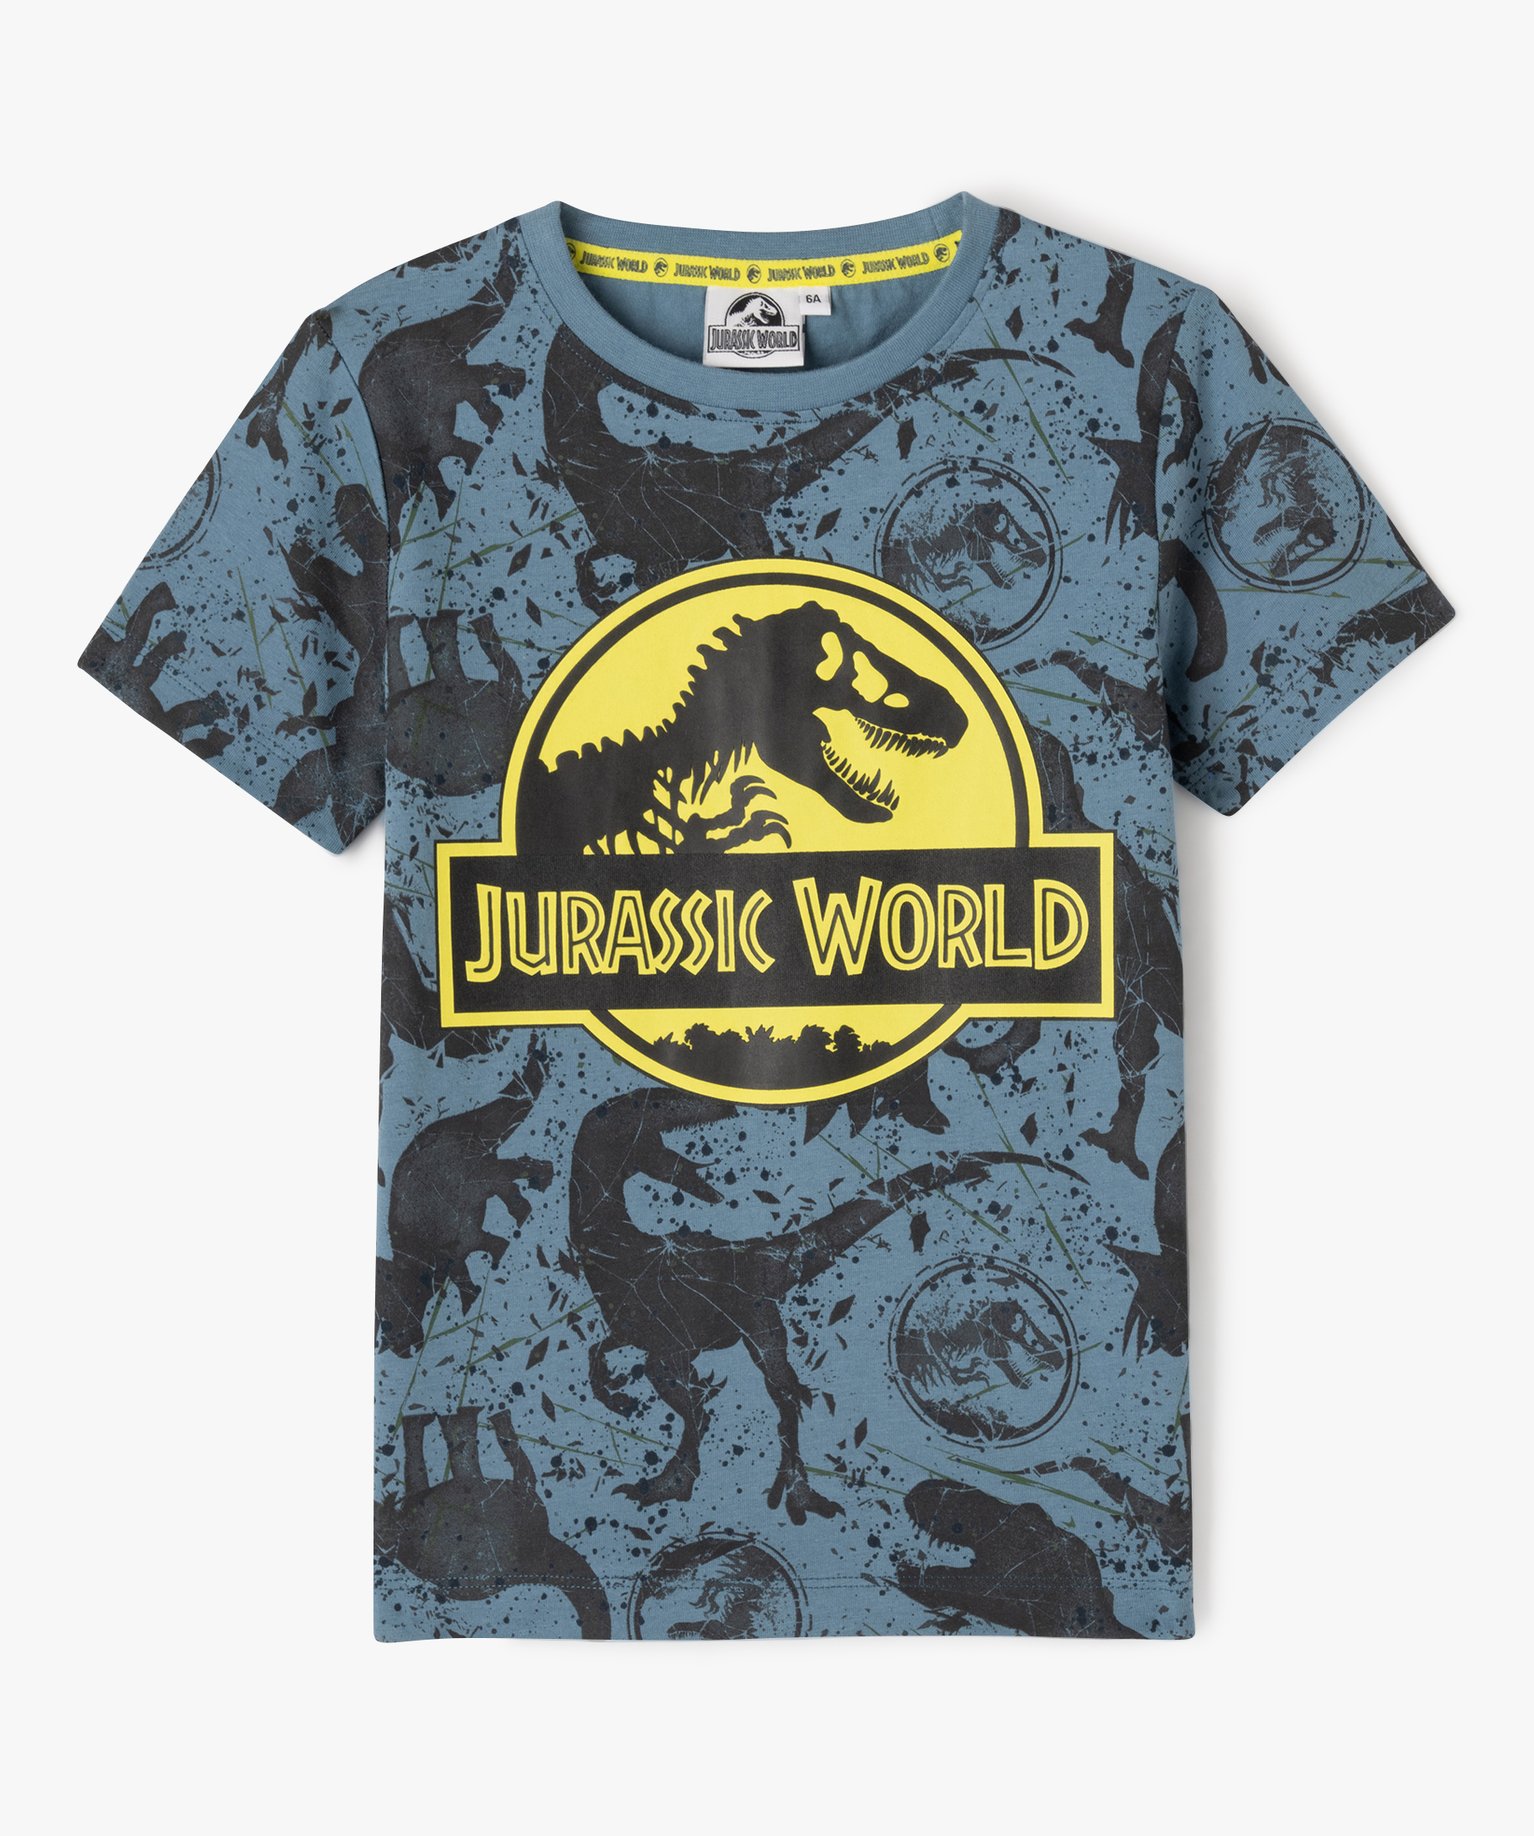 Tee-shirt manches courtes imprimé garçon - Jurassic World - 4 - bleu - JURASSIC WORLD